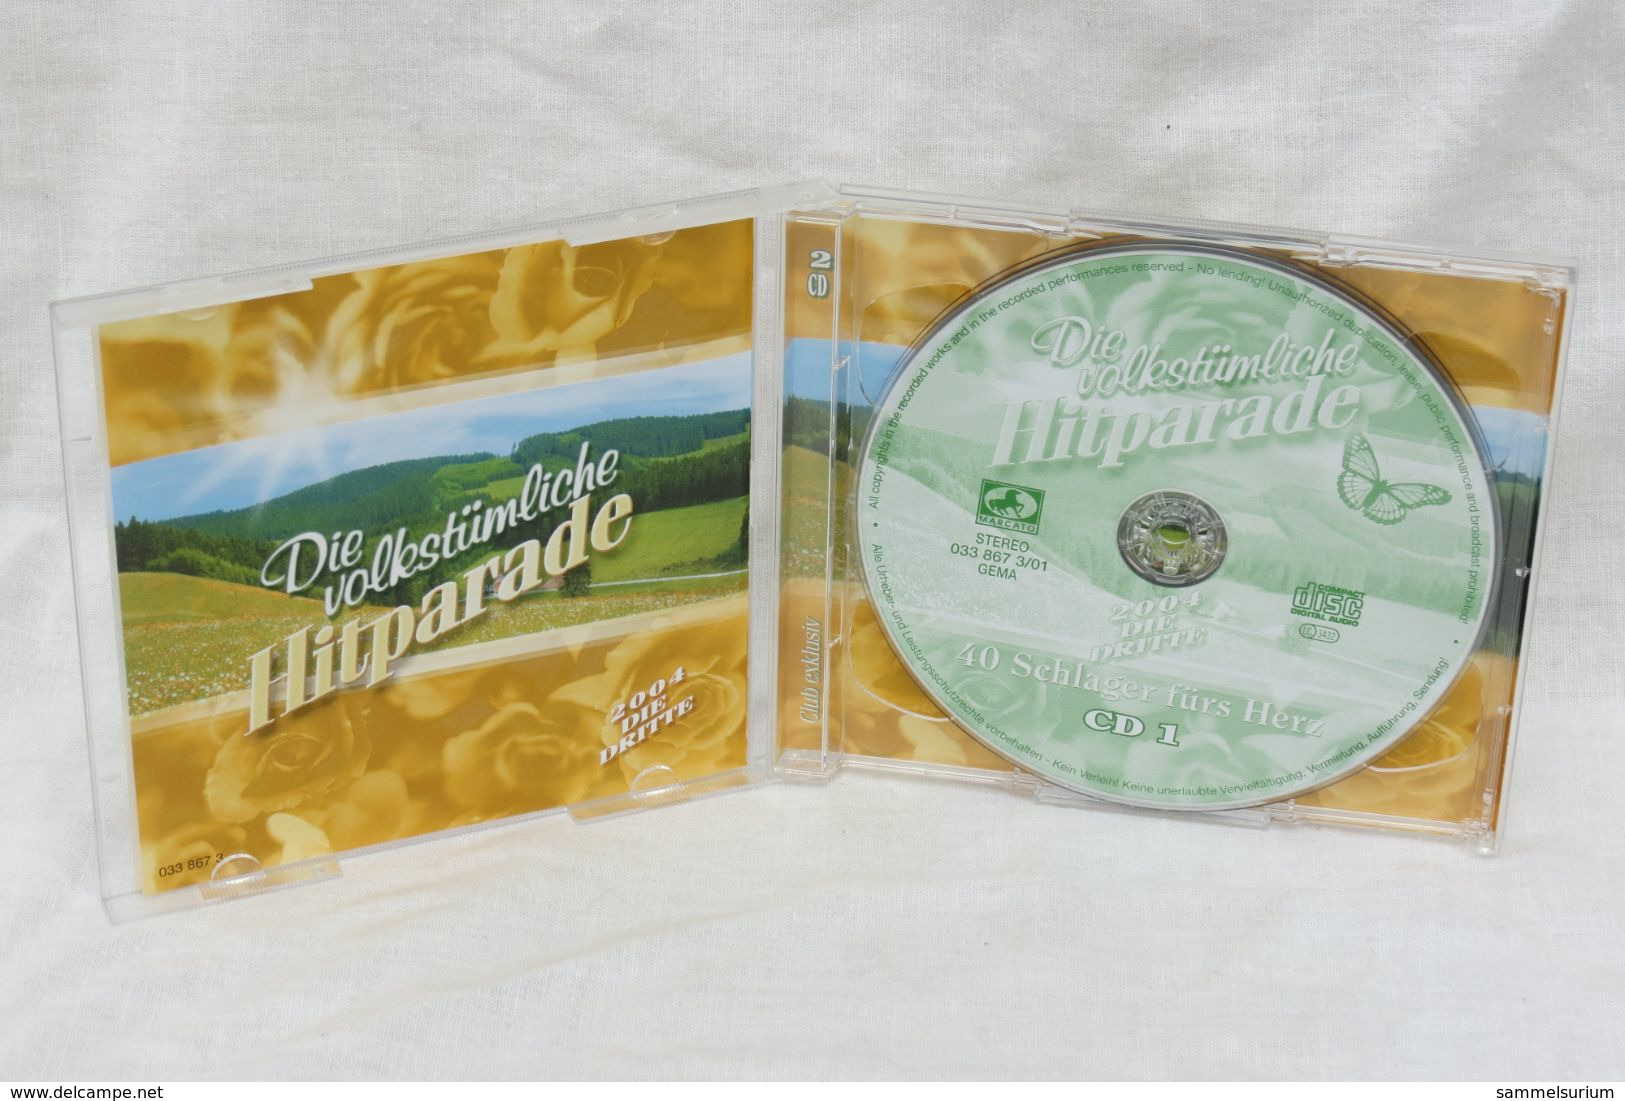 2 CDs "Die Volkstümliche Hitparade" 40 Schlager Fürs Herz, Ausgabe 2004 Die Dritte - Sonstige - Deutsche Musik